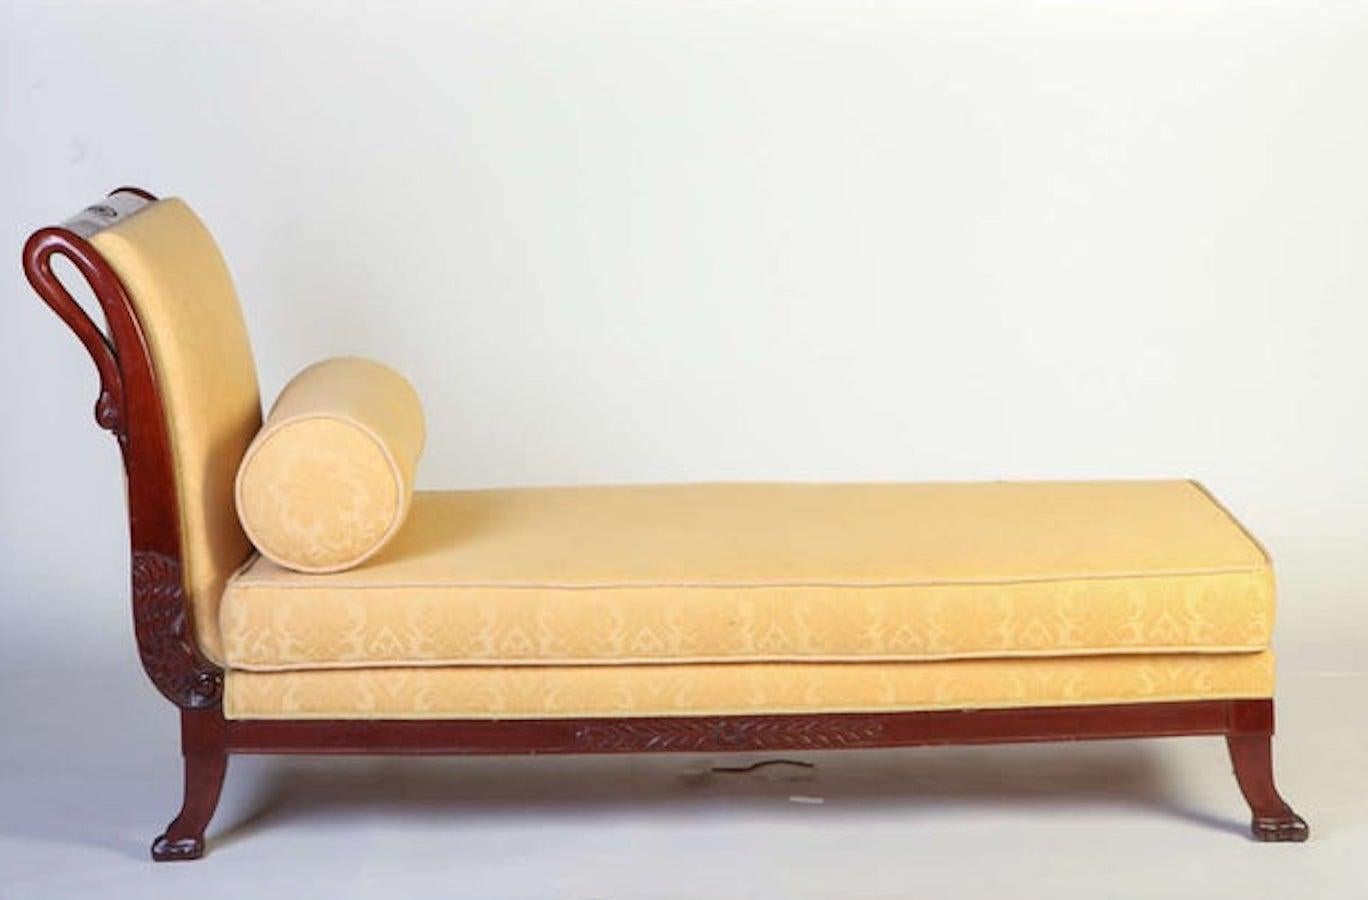 Italian 19th Century Mahogany Swan Neck Sofa or Chais Longues, Tuscany, 1820 For Sale 2